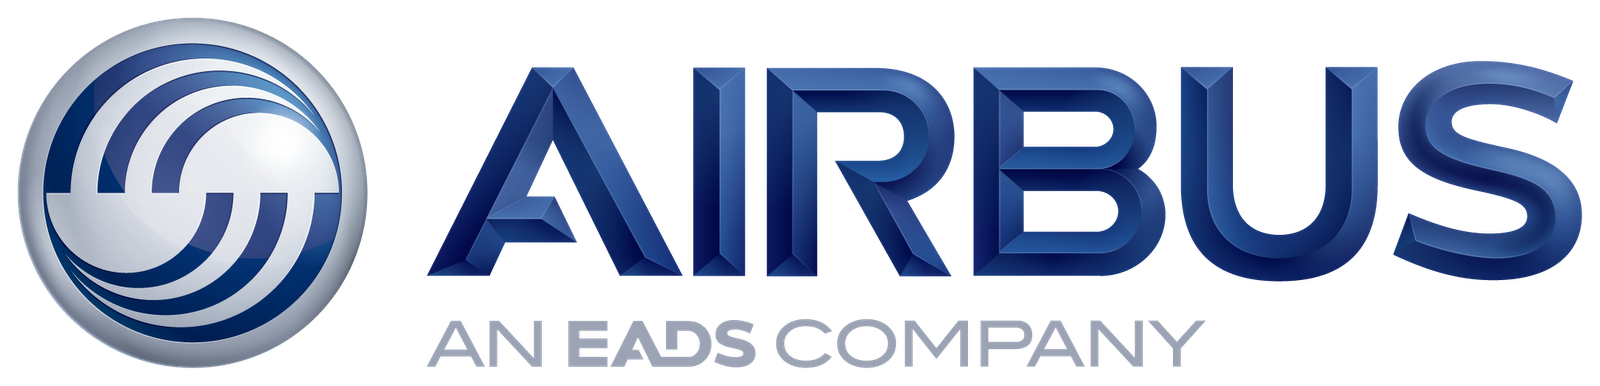 Airbus Logo Transparent Images